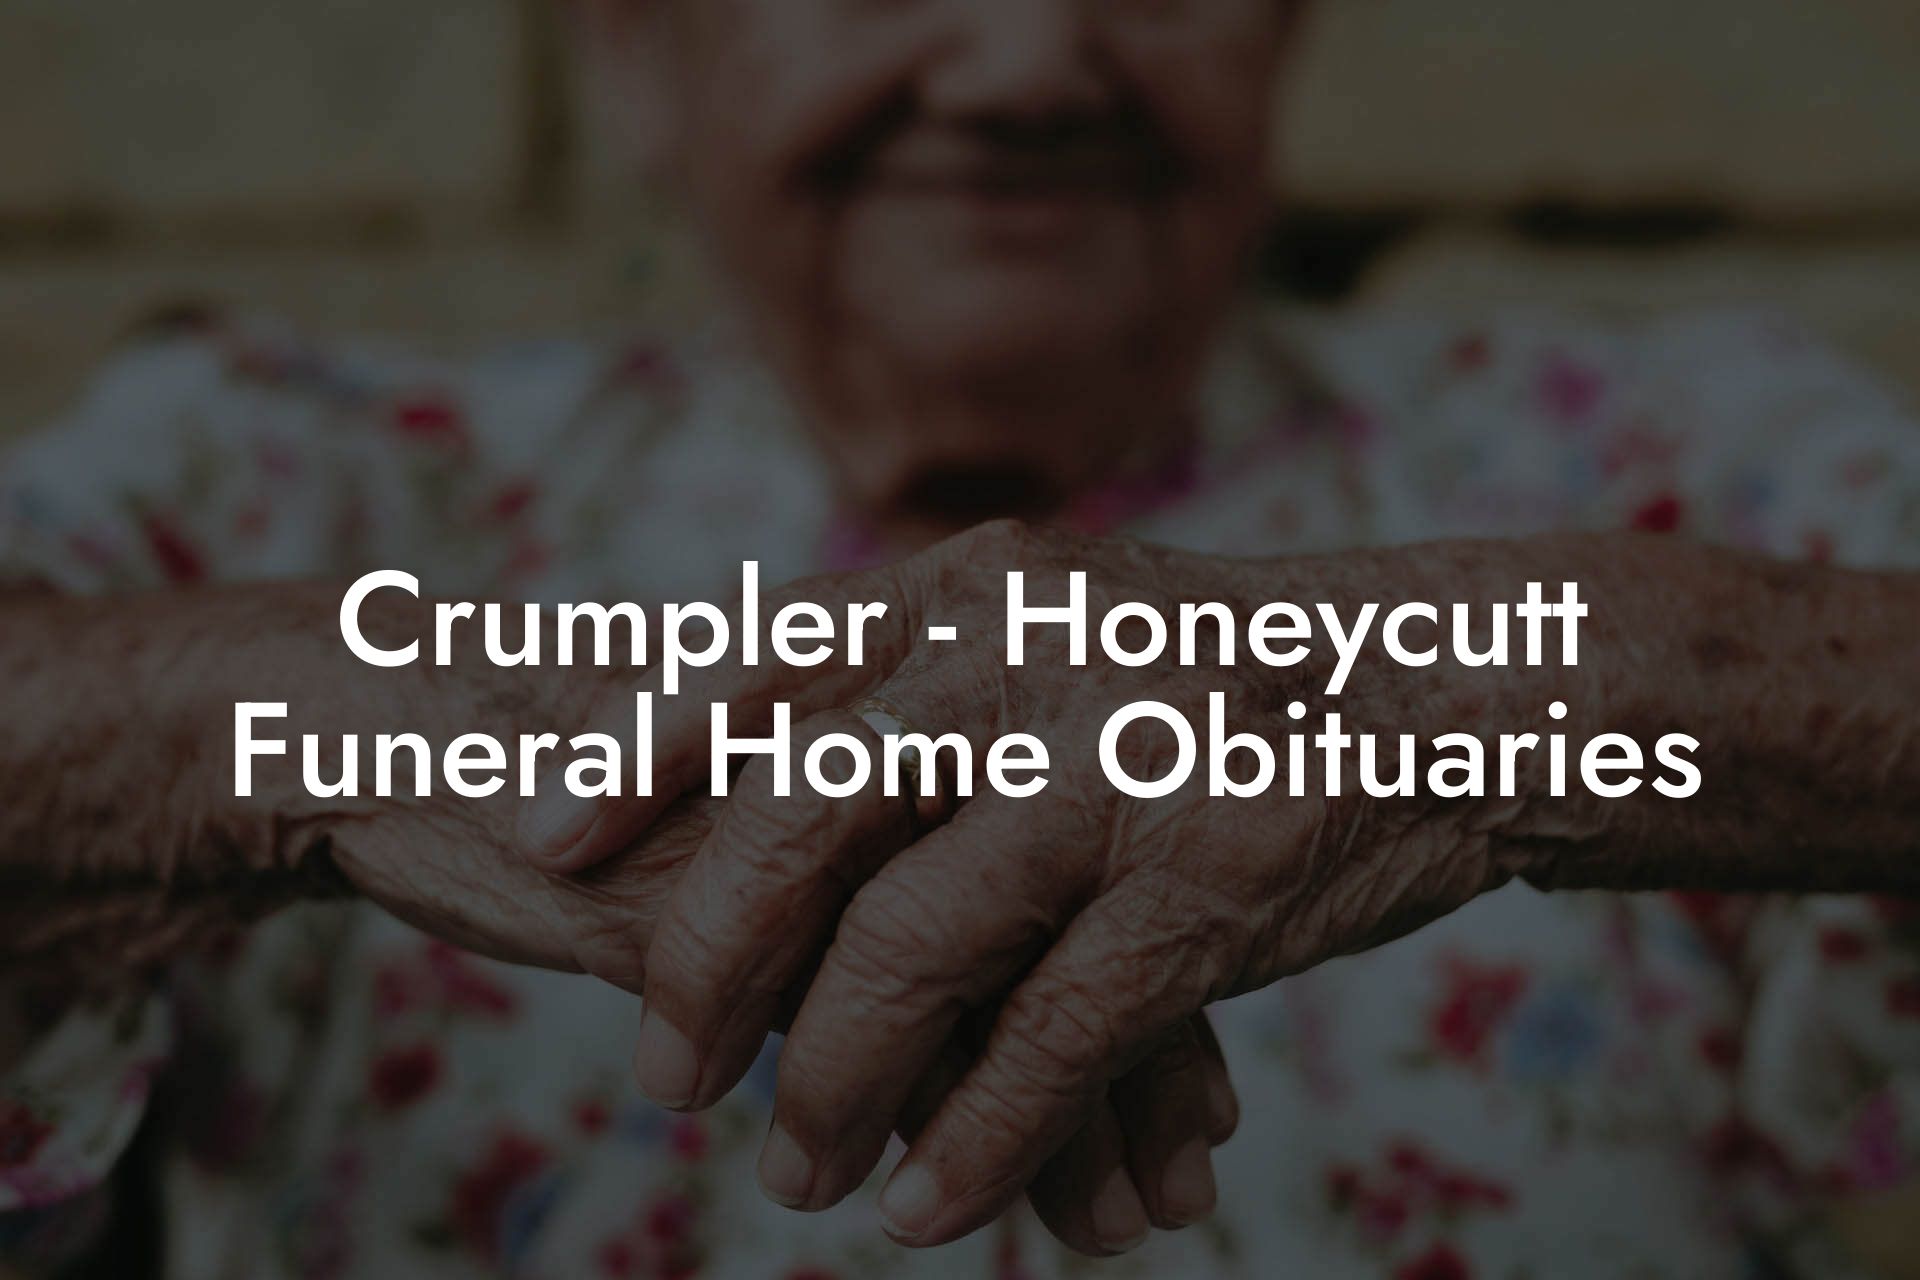 Crumpler - Honeycutt Funeral Home Obituaries